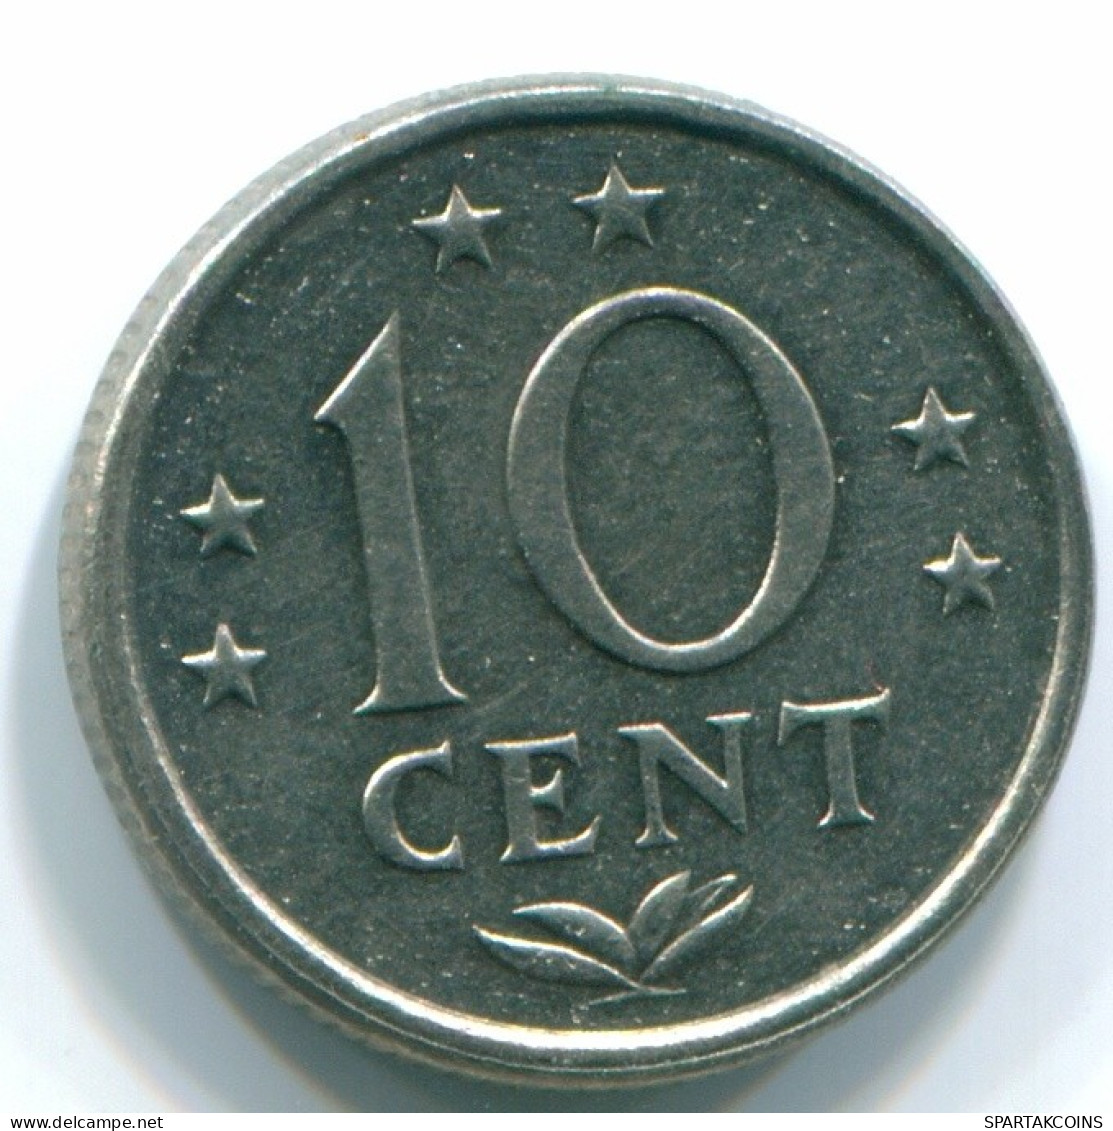 10 CENTS 1978 NIEDERLÄNDISCHE ANTILLEN Nickel Koloniale Münze #S13549.D.A - Niederländische Antillen